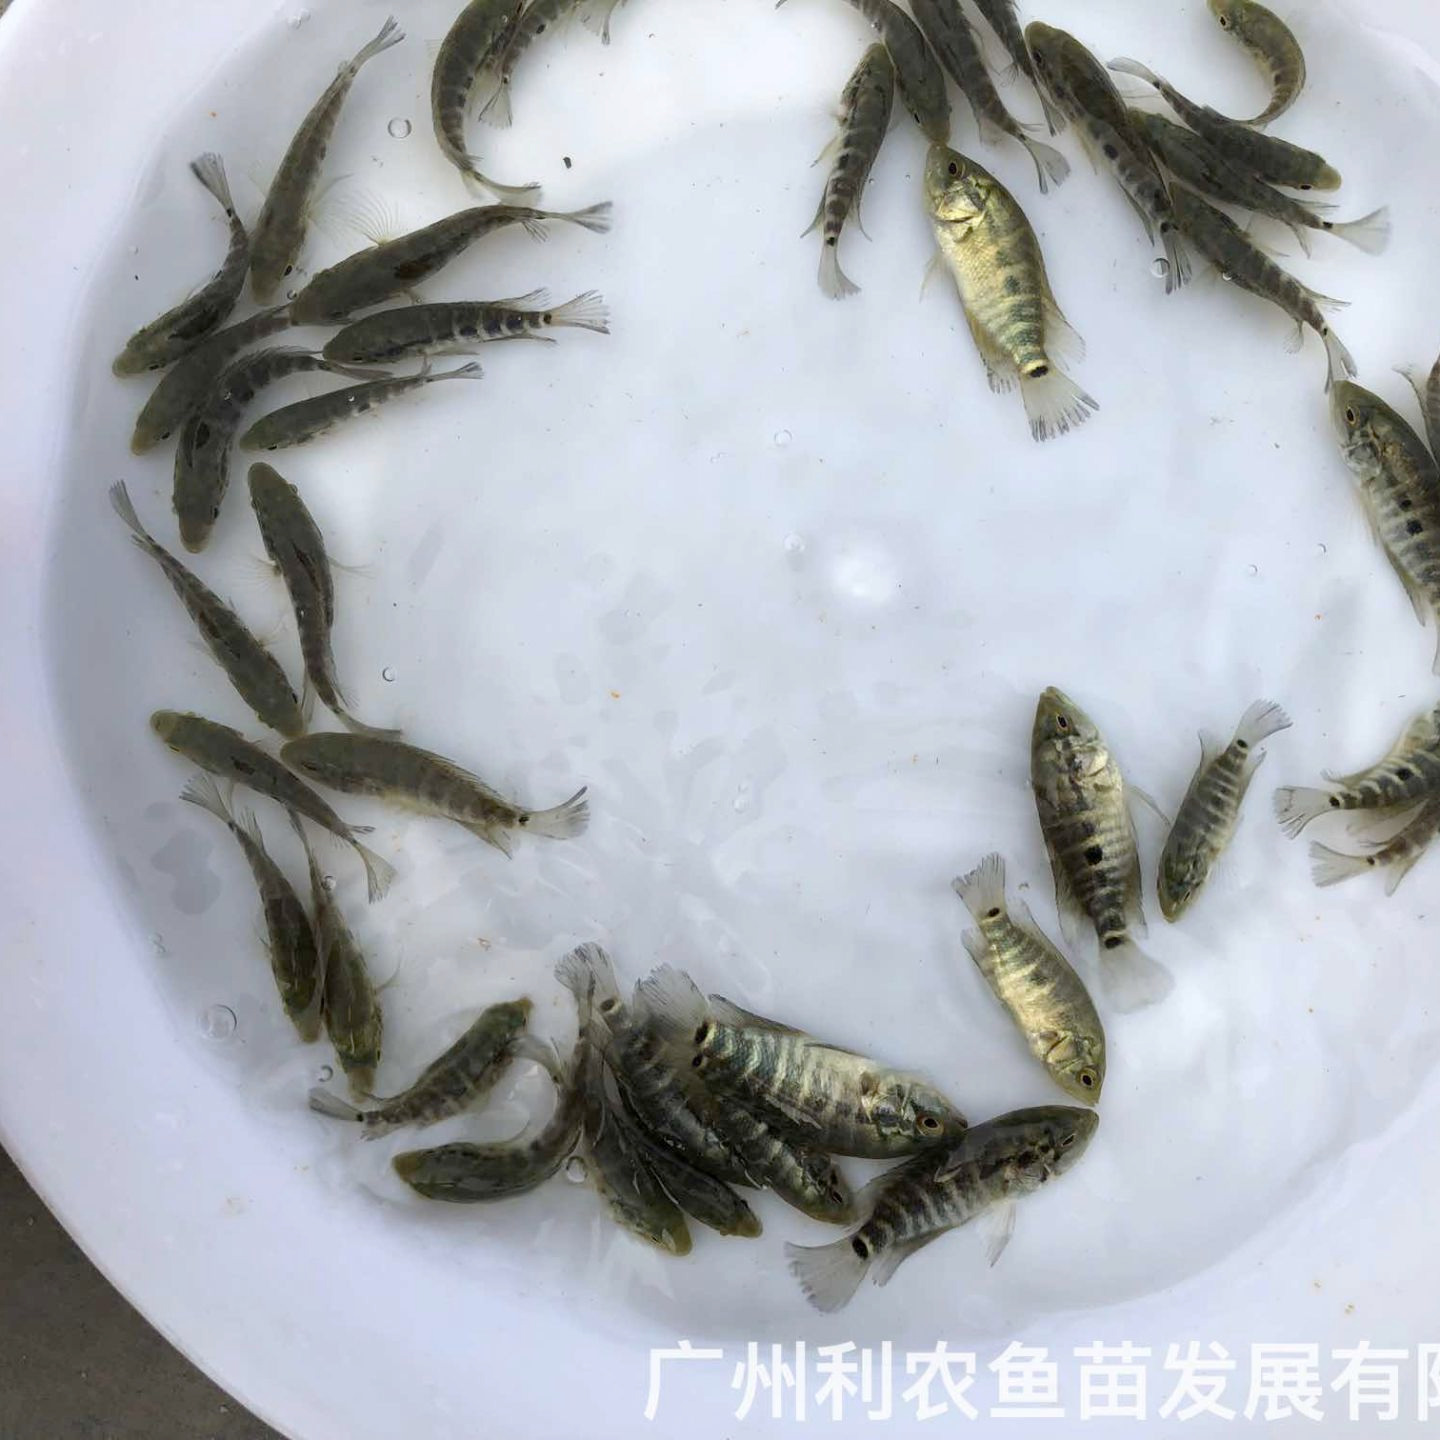 福建漳州淡水花斑鱼苗出售福州长乐石斑鱼苗批发价格